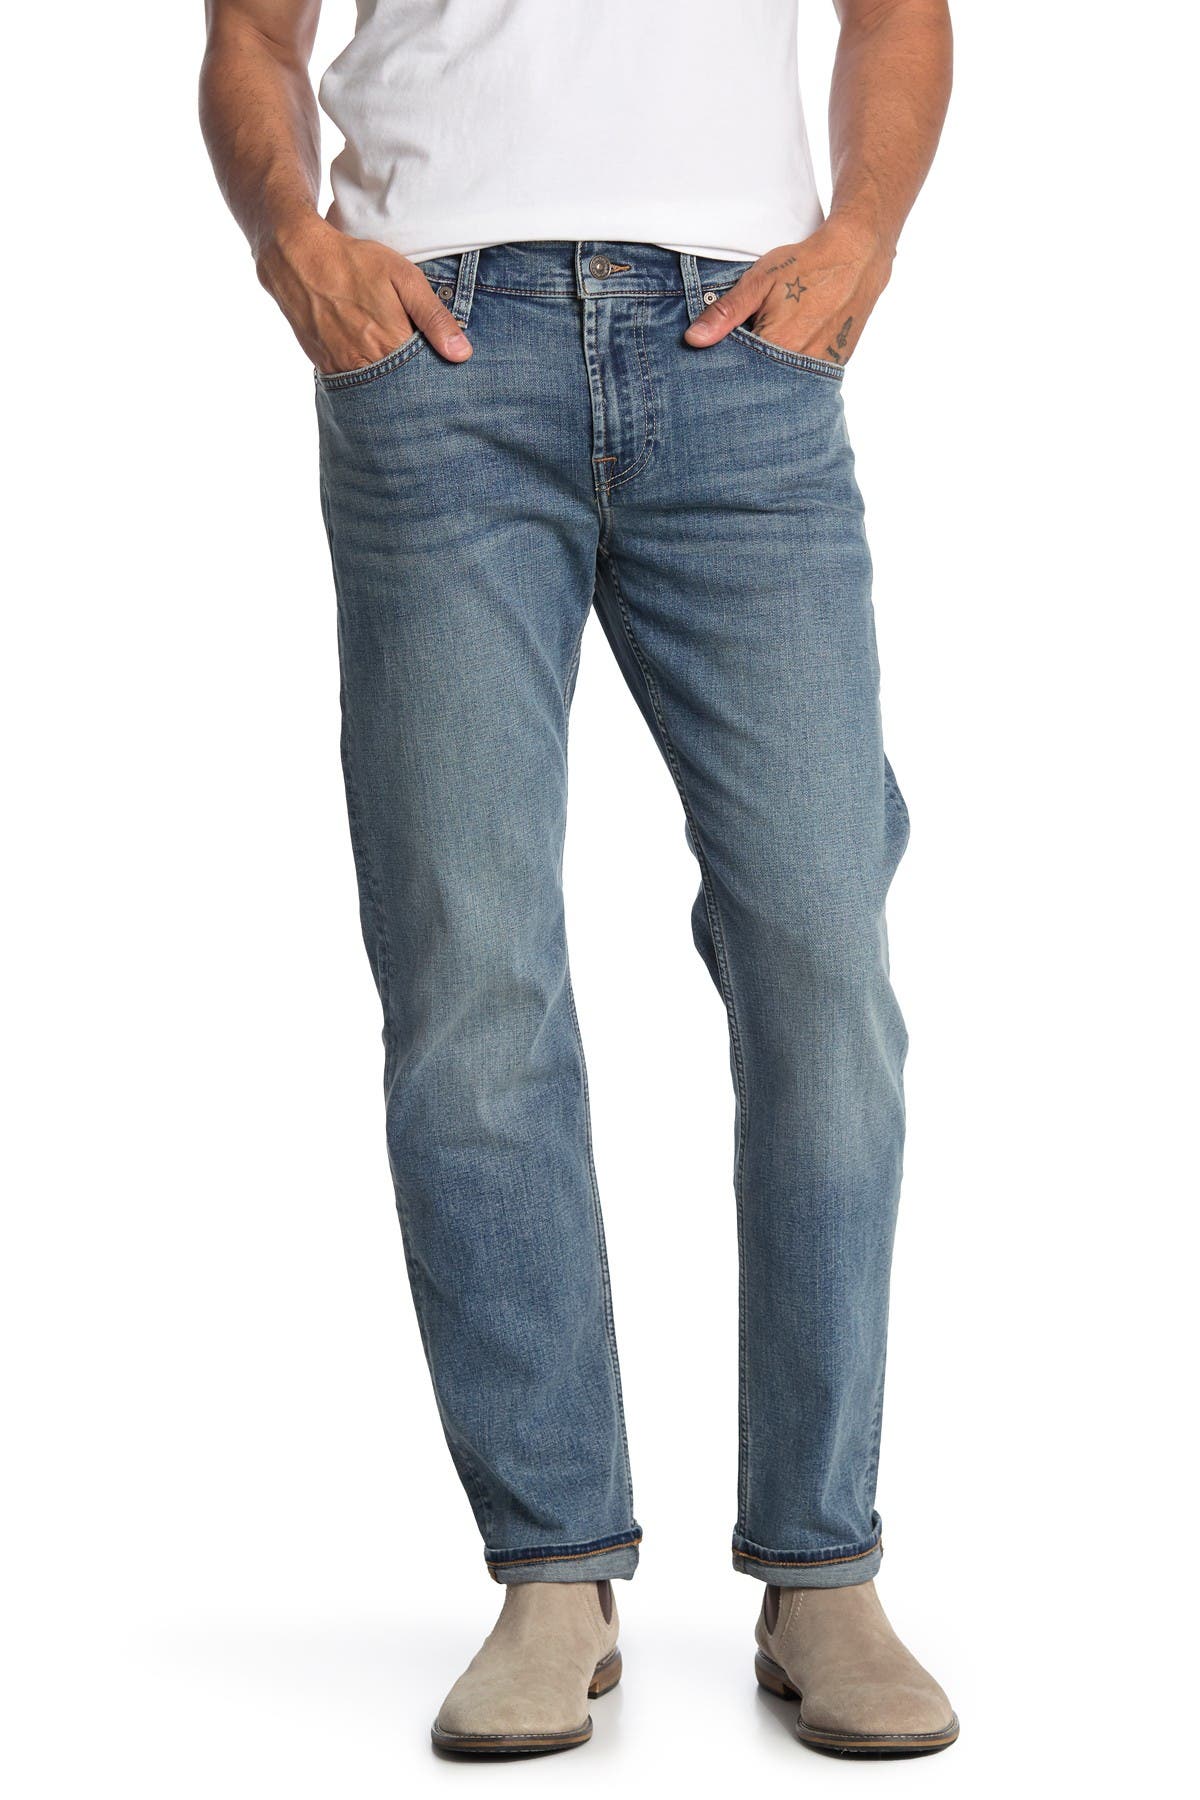 nordstrom rack seven jeans